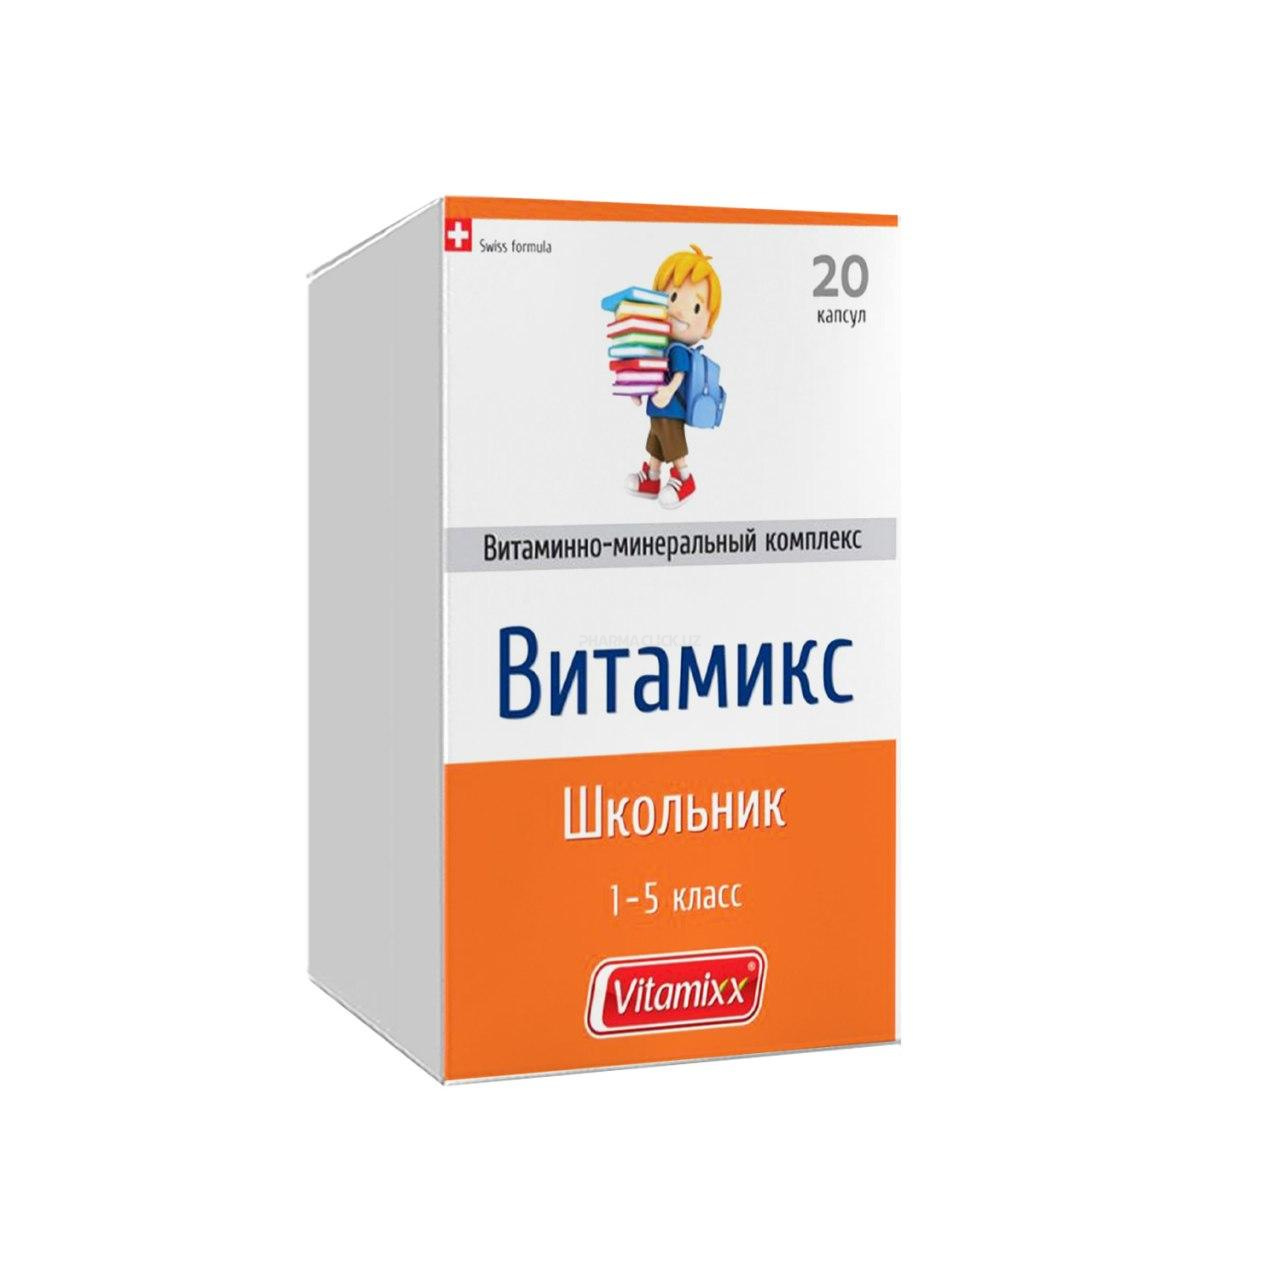 Vitamiks Shkolnik №20